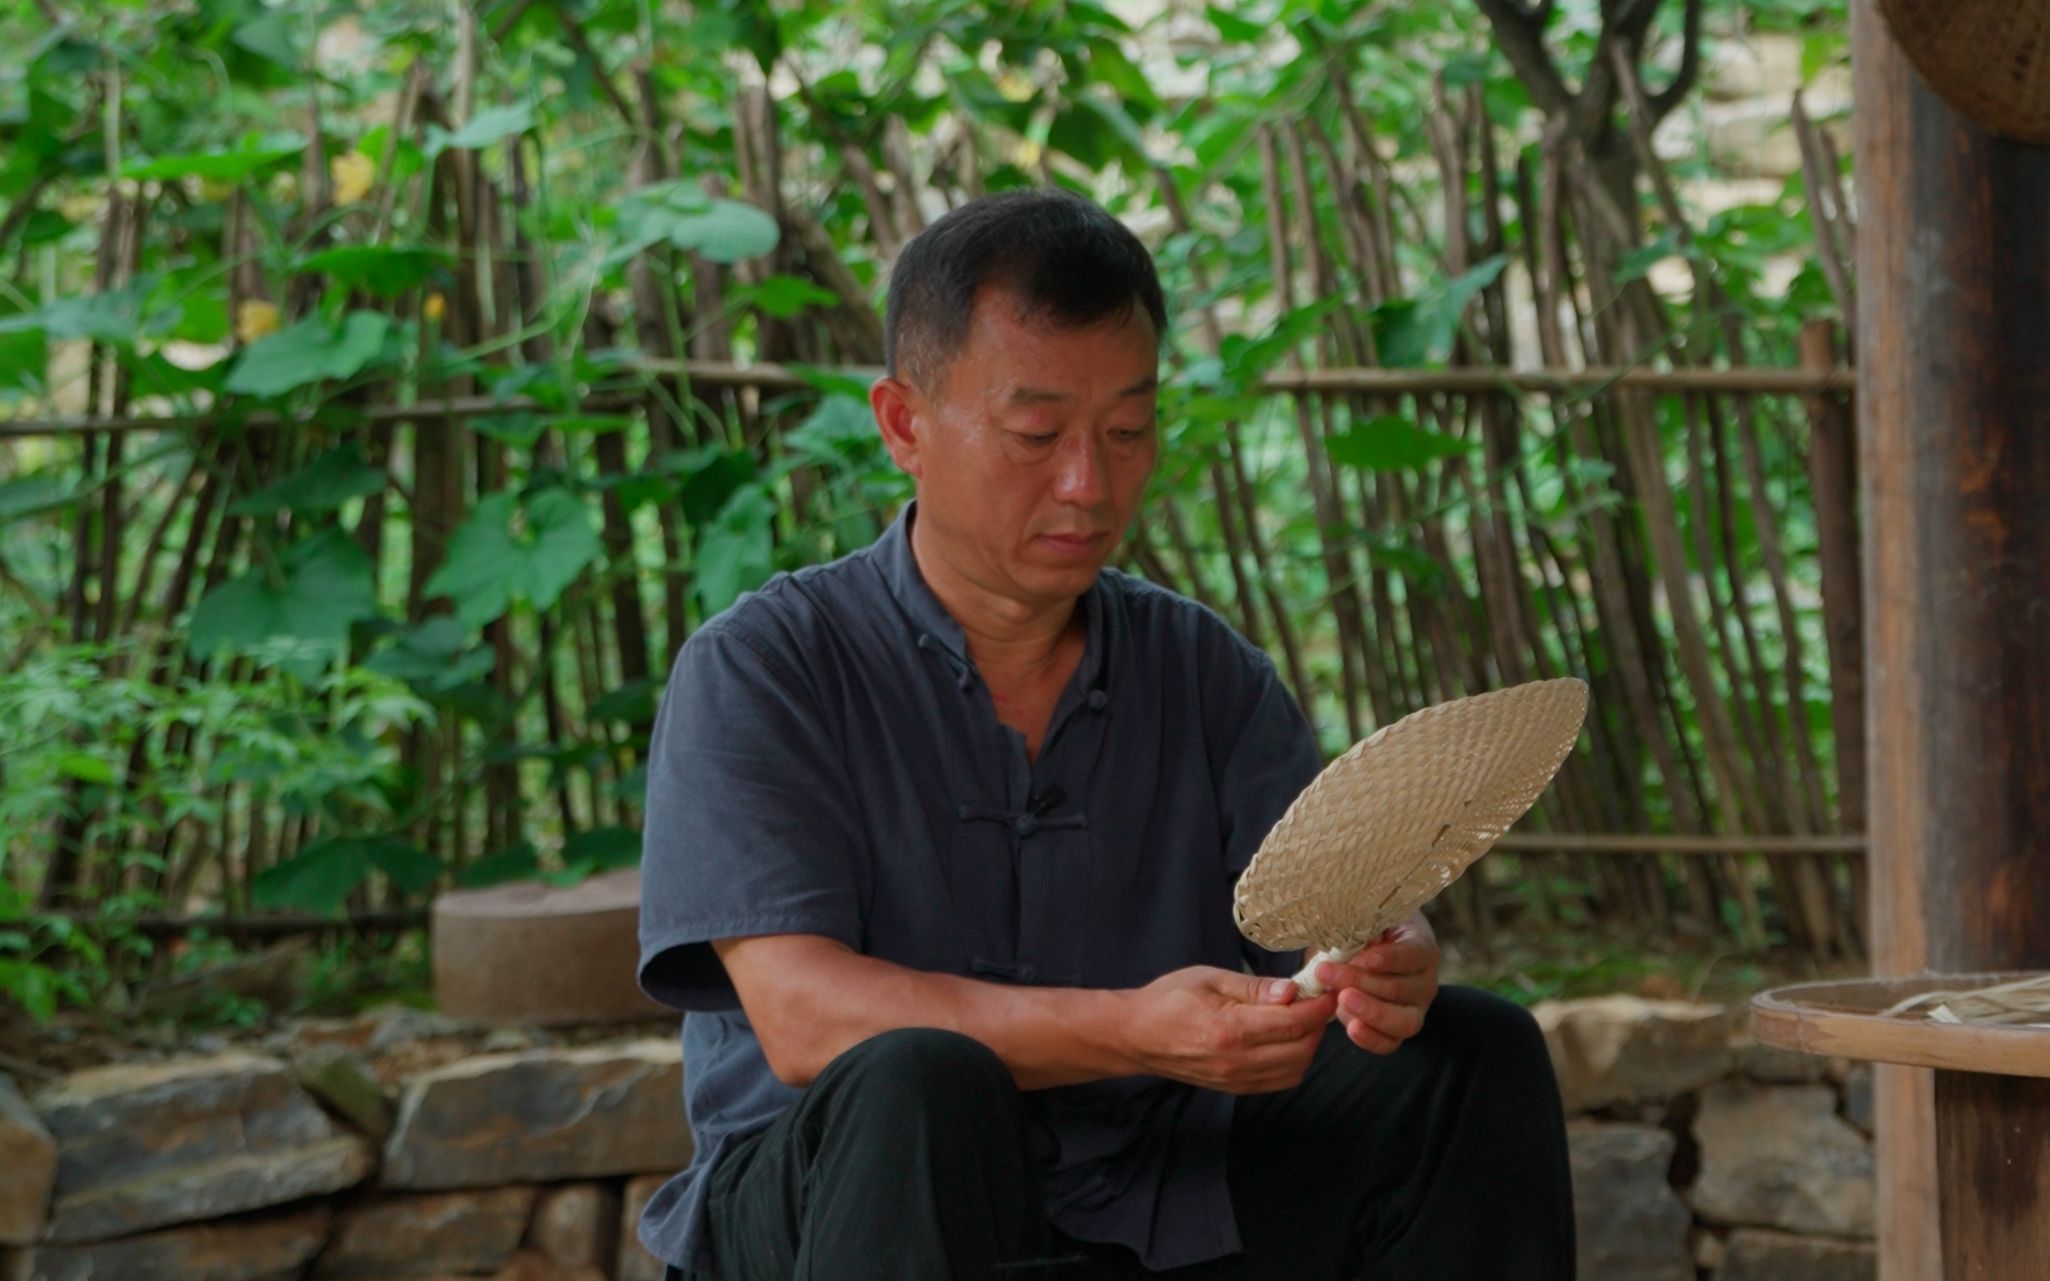 中国是世界上最早饲养家蚕，用其巢丝织绸的国家。-彭南科-彭南科-哔哩哔哩视频